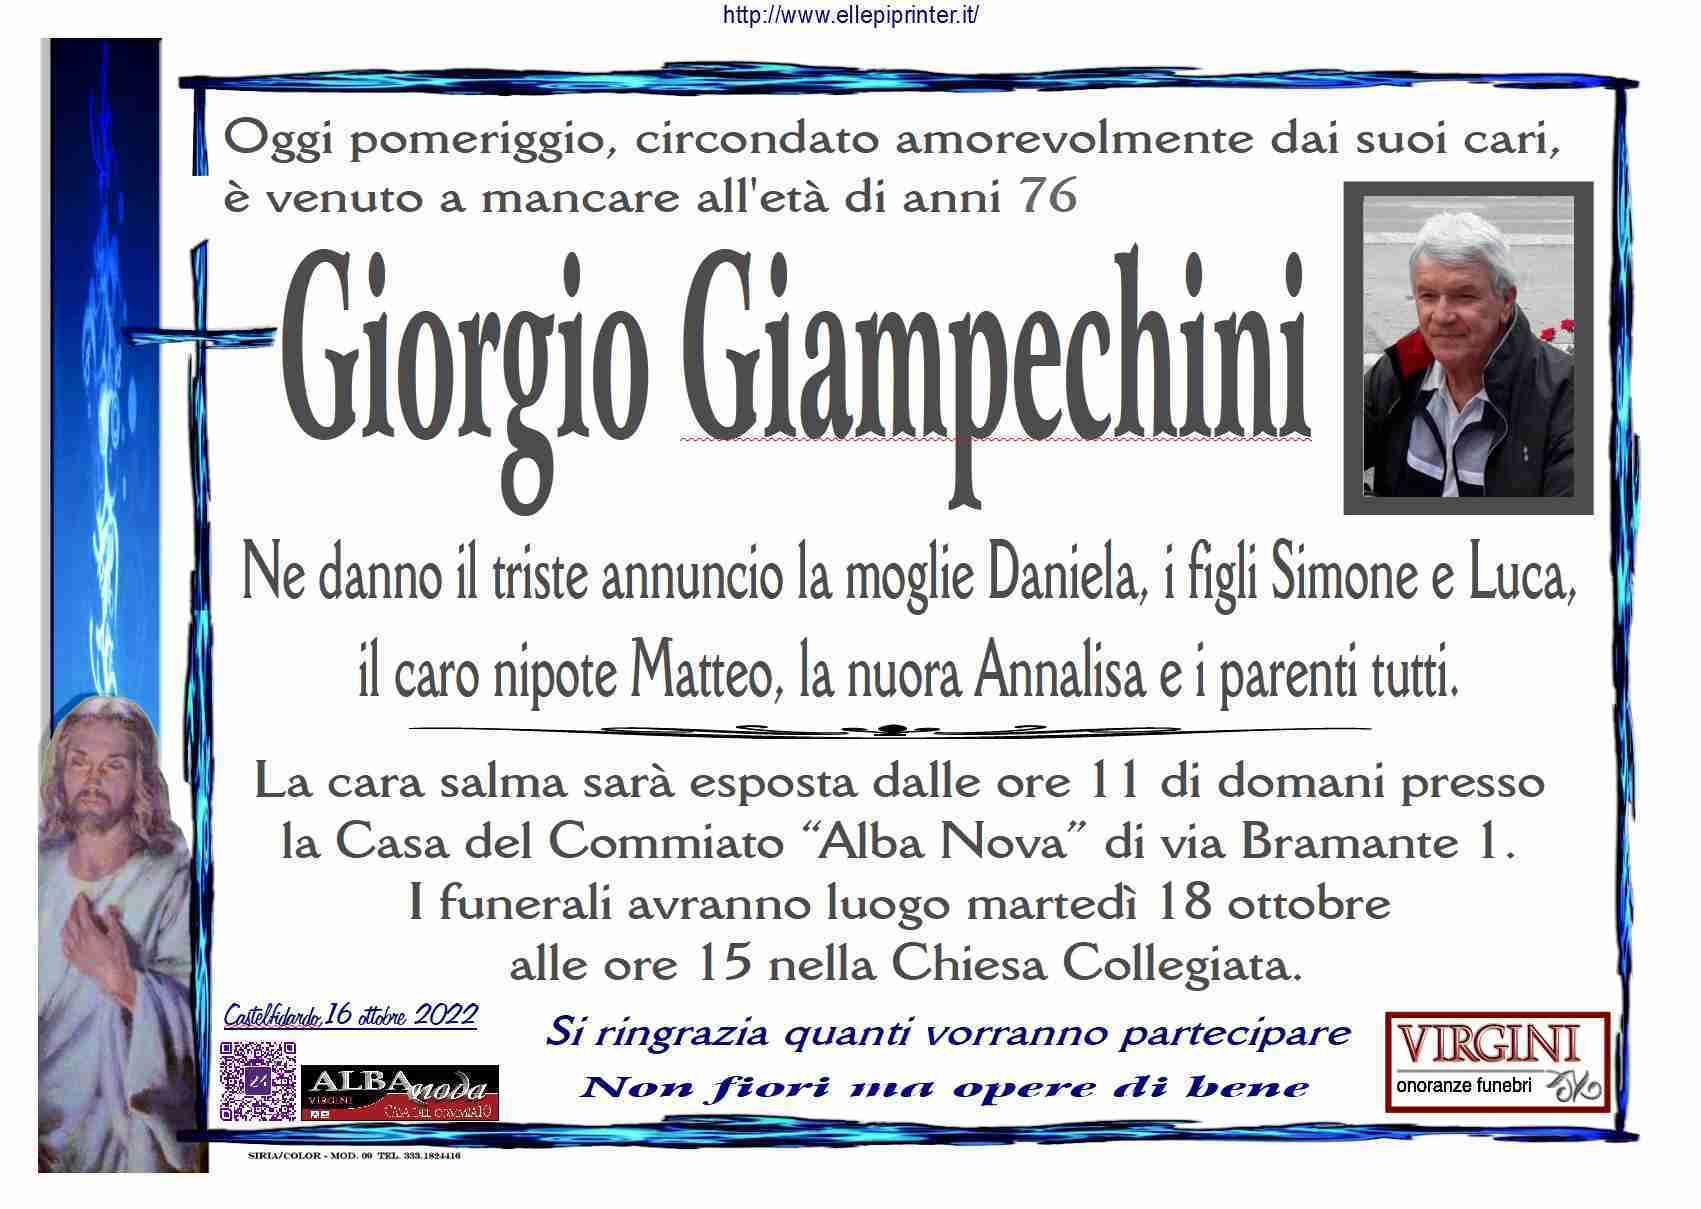 Giorgio Giampechini